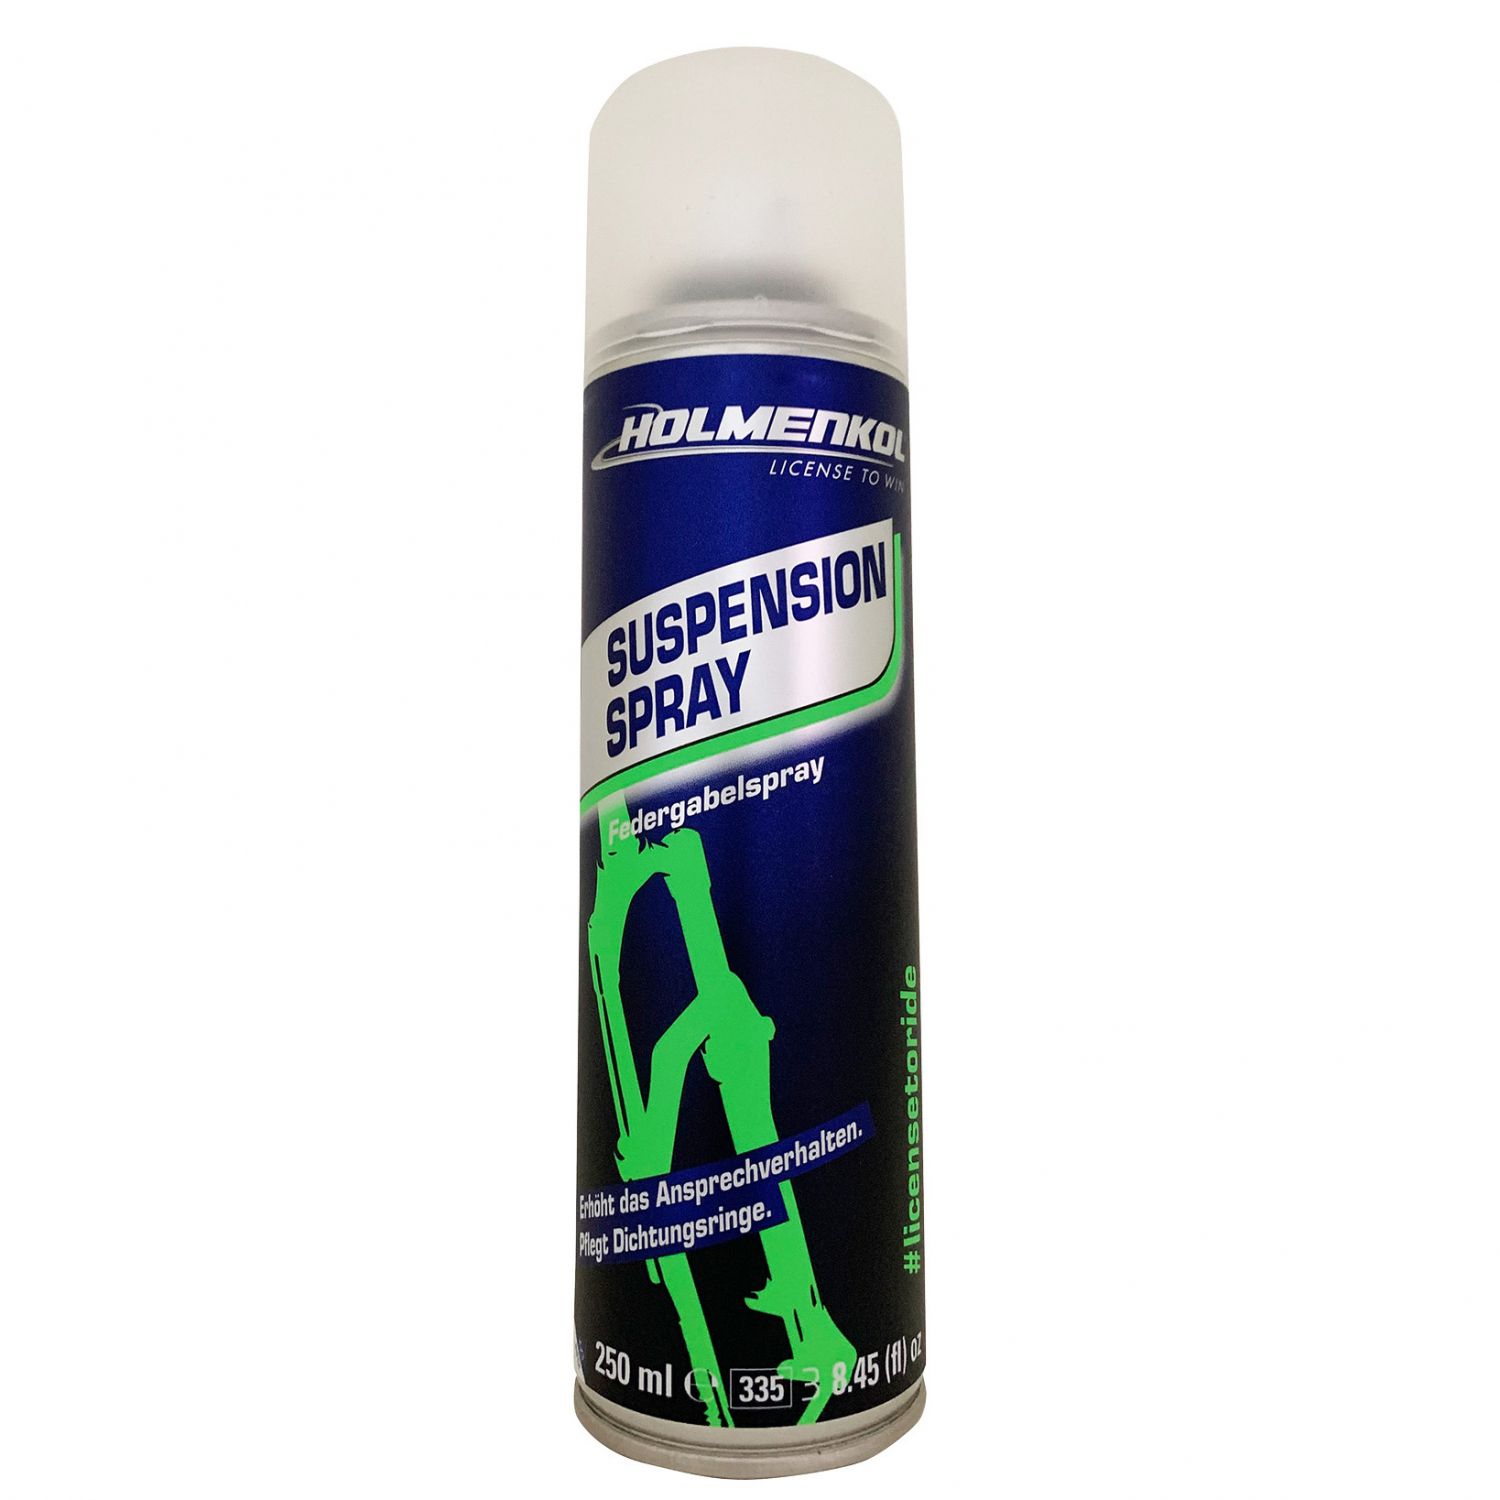 Brug Holmenkol Suspension Spray, 250ml til en forbedret oplevelse